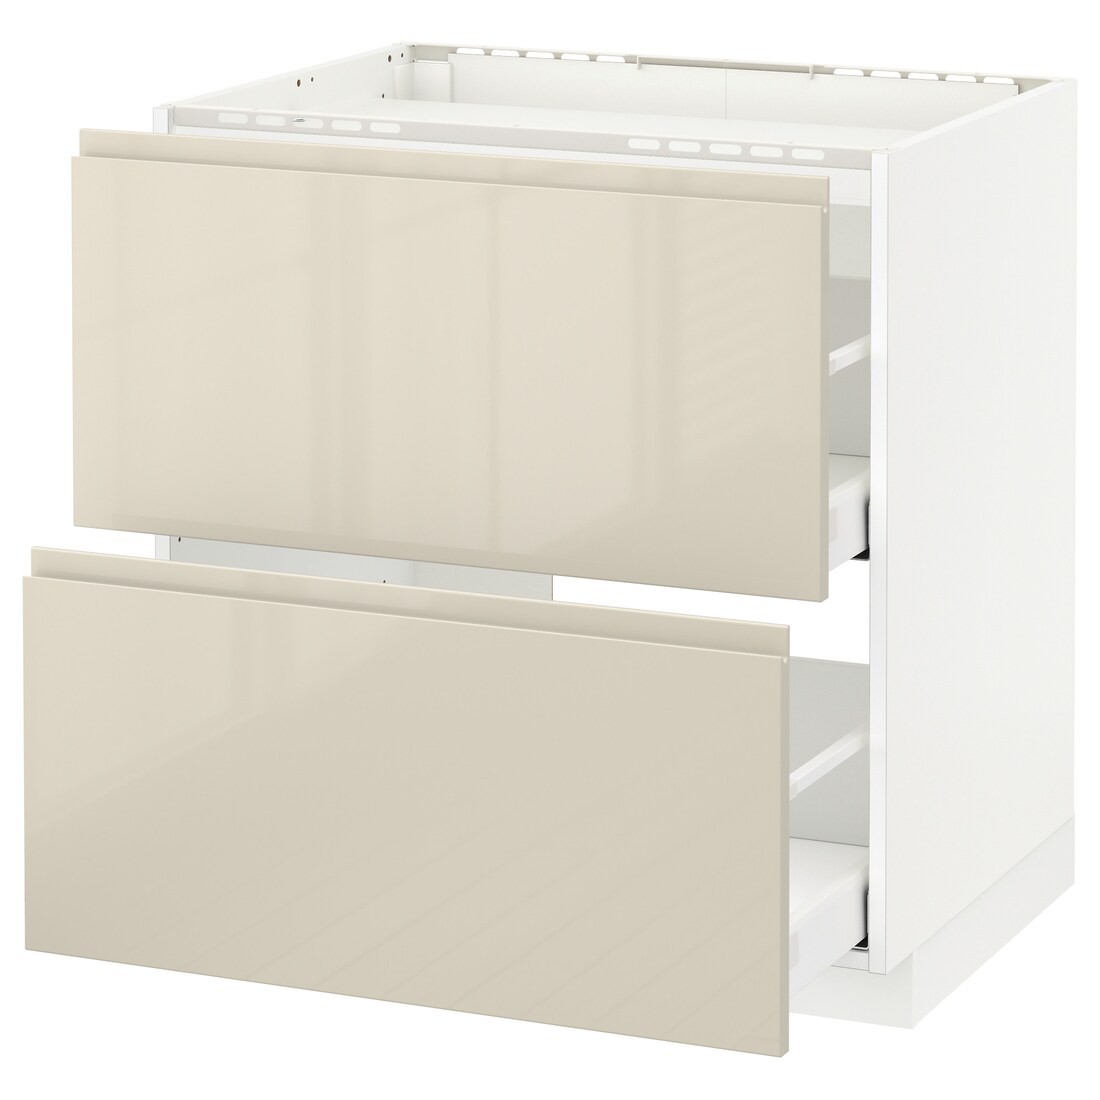 IKEA METOD МЕТОД / MAXIMERA МАКСИМЕРА Напольный шкаф с ящиками, белый / Voxtorp глянцевый светло-бежевый, 80x60 см 99142982 991.429.82